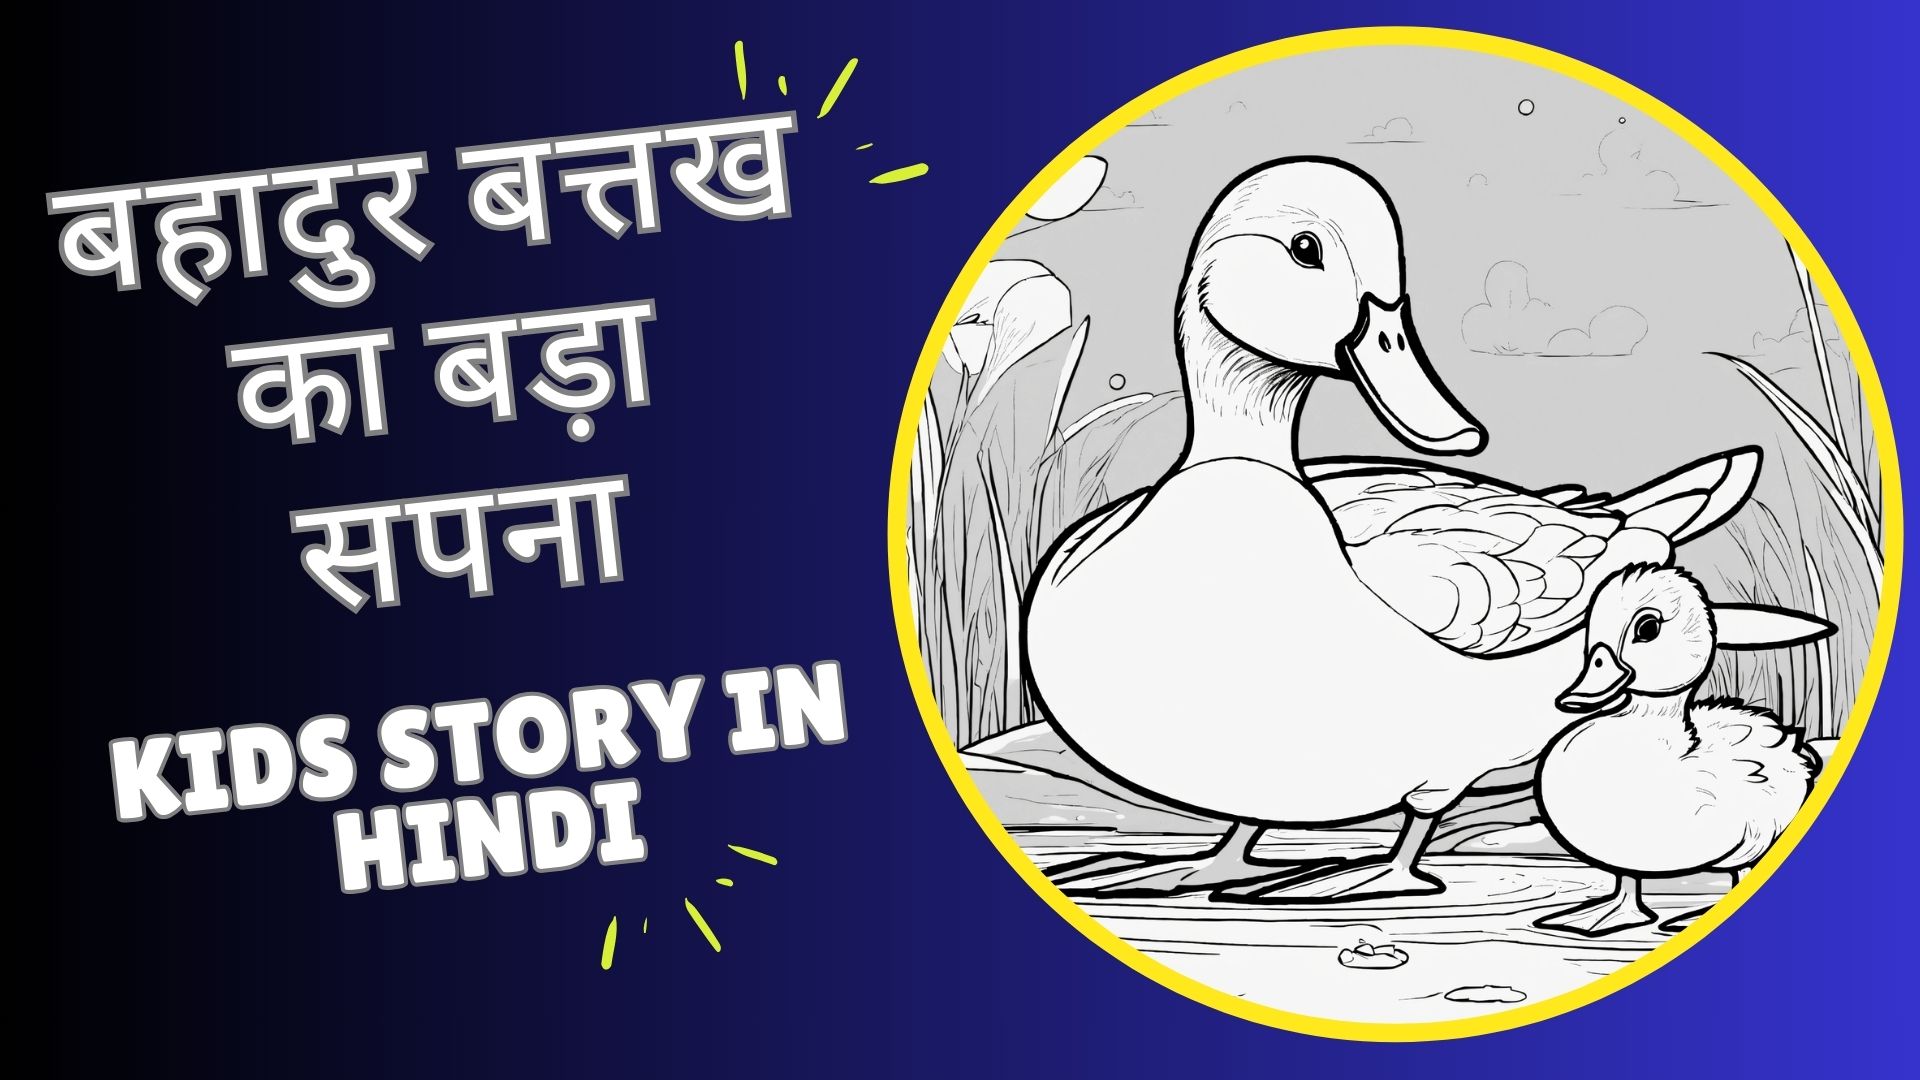 बहादुर बत्तख का बड़ा सपना | Kids Story in Hindi